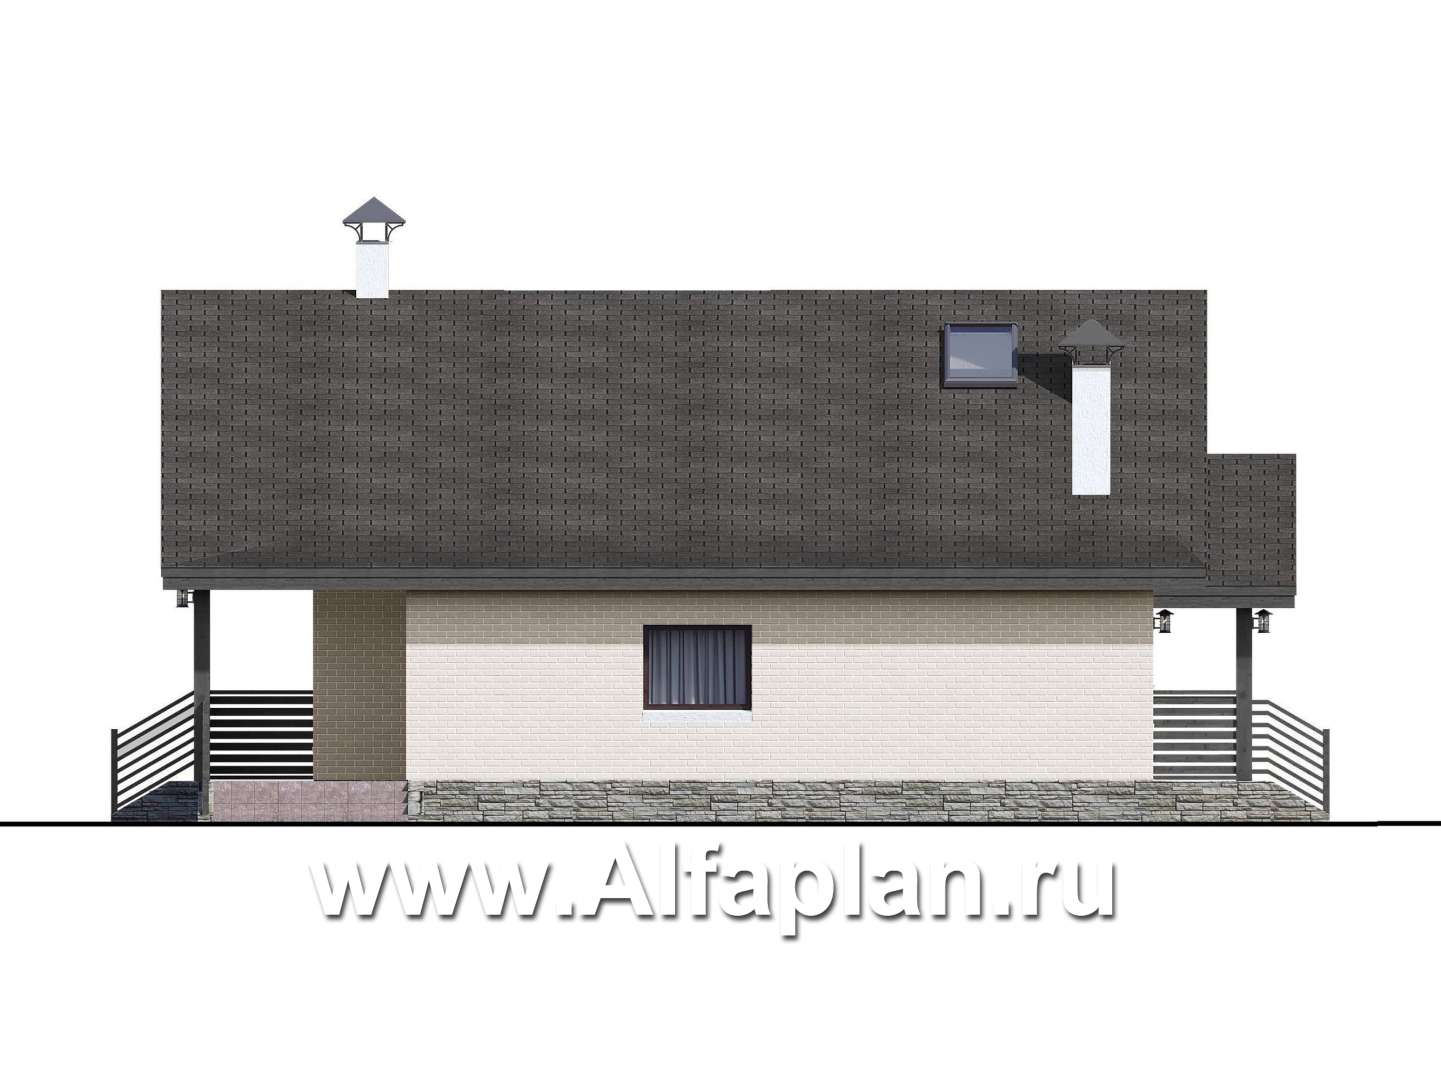 «Моризо» - проект дома с мансардой, планировка 2 спальни на 1 эт и вторая гостиная на 2 эт, шале с двускатной крышей - фасад дома